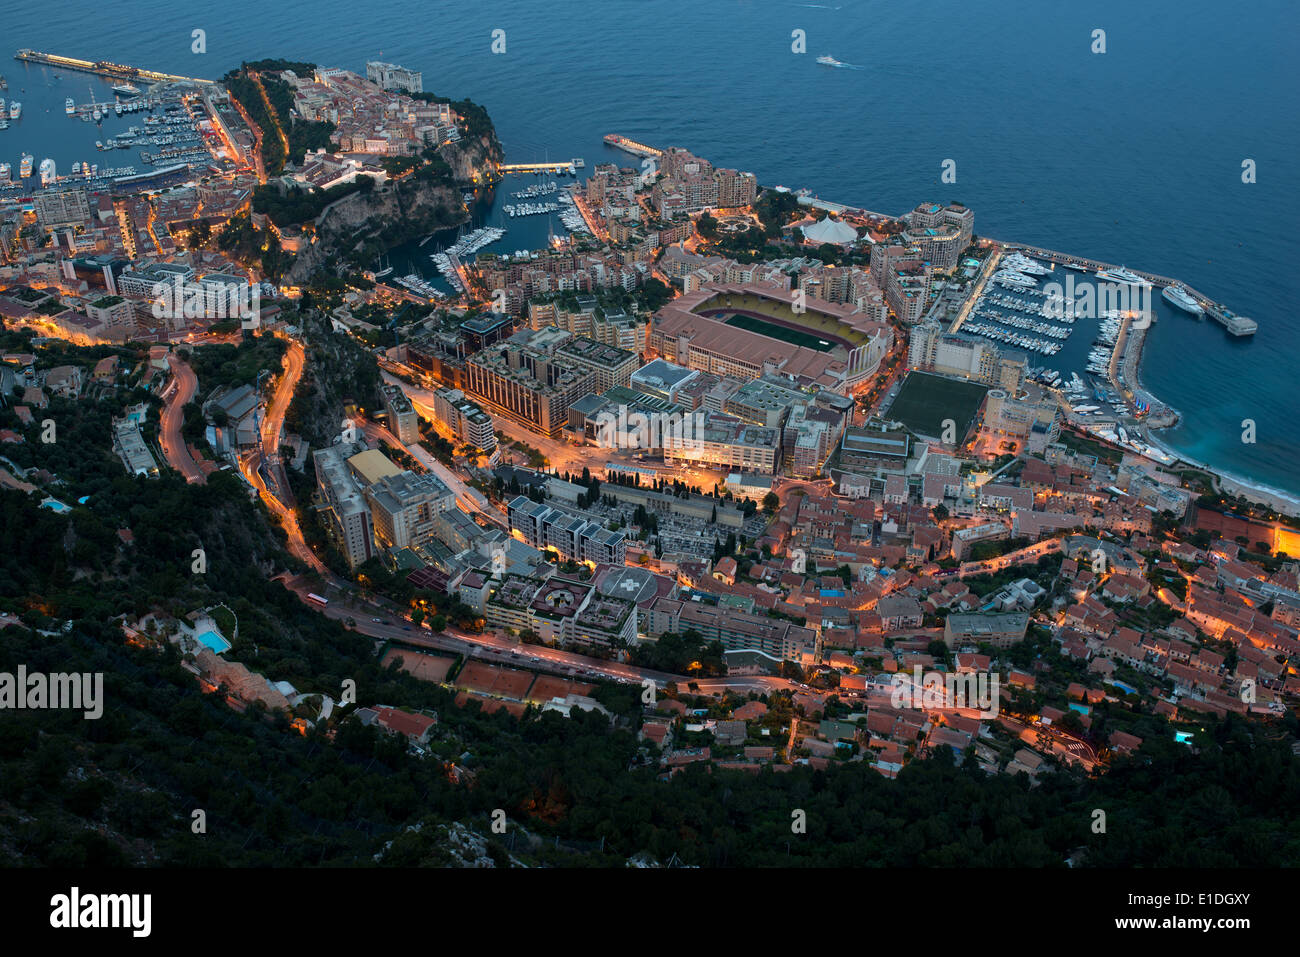 Monaco-Ville alias 'le Rocher' auf seinem felsigen Vorgebirge und dem Stadtteil Fontvieille, der auf zurückgewonnenem Land erbaut wurde. Fürstentum Monaco. Stockfoto